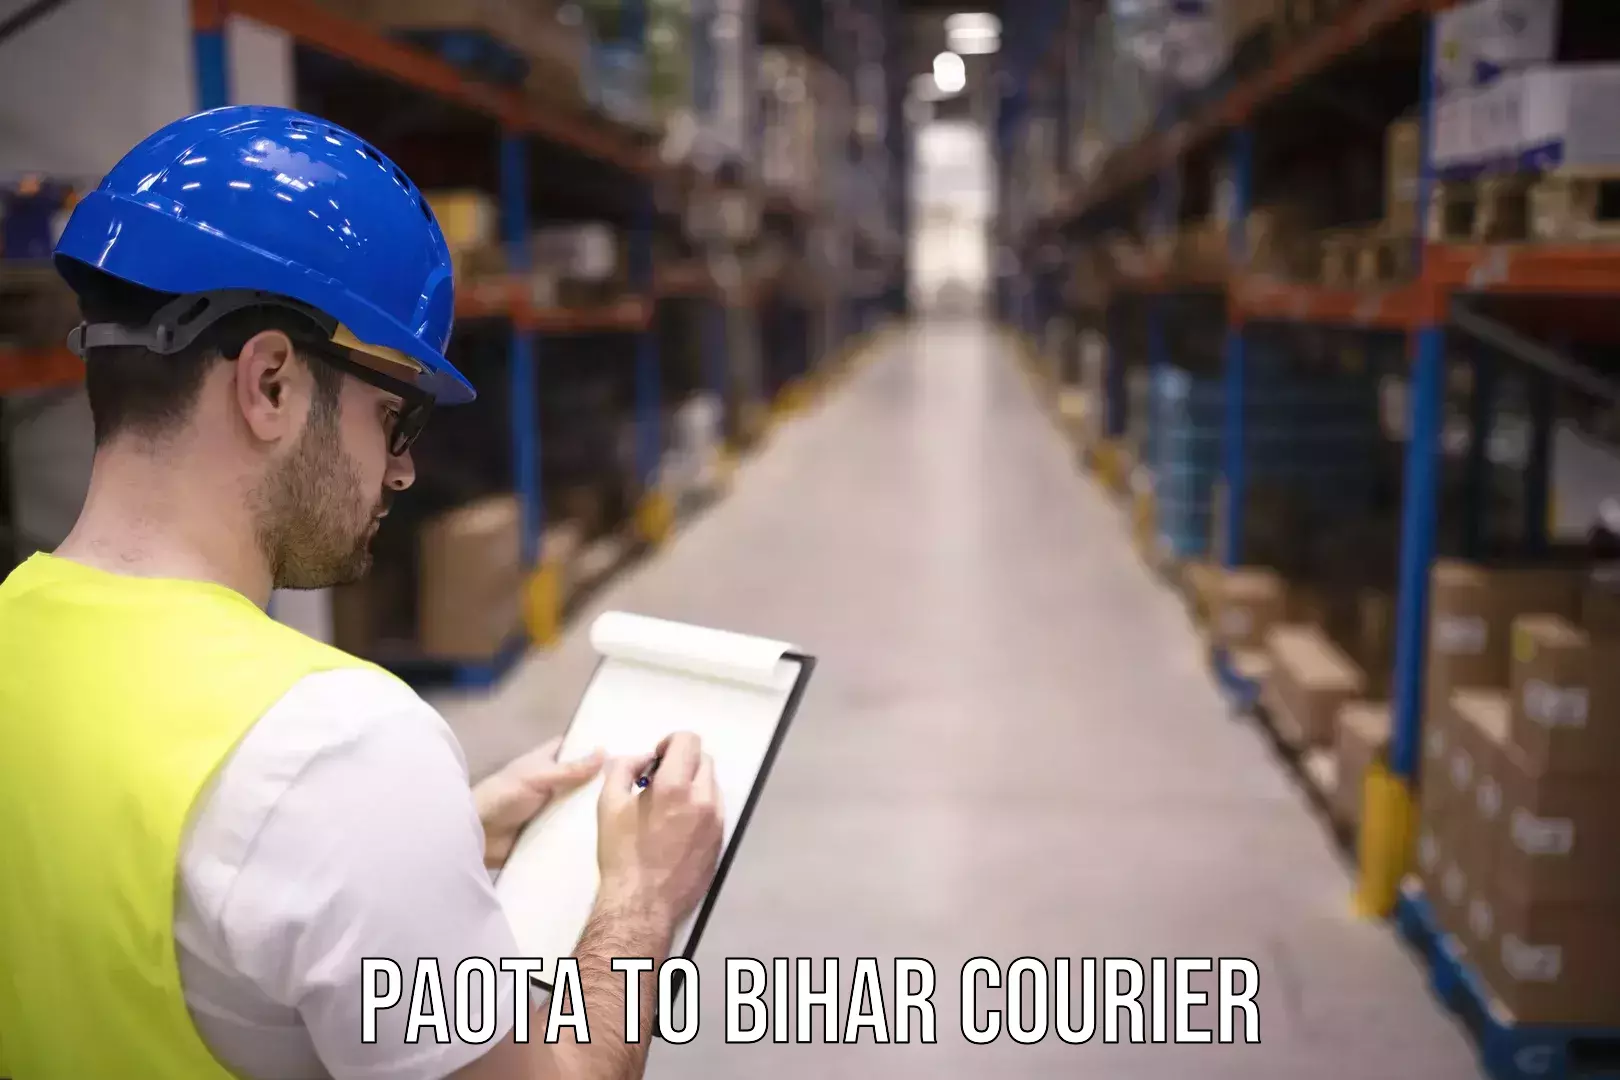 Business shipping needs Paota to Barhiya